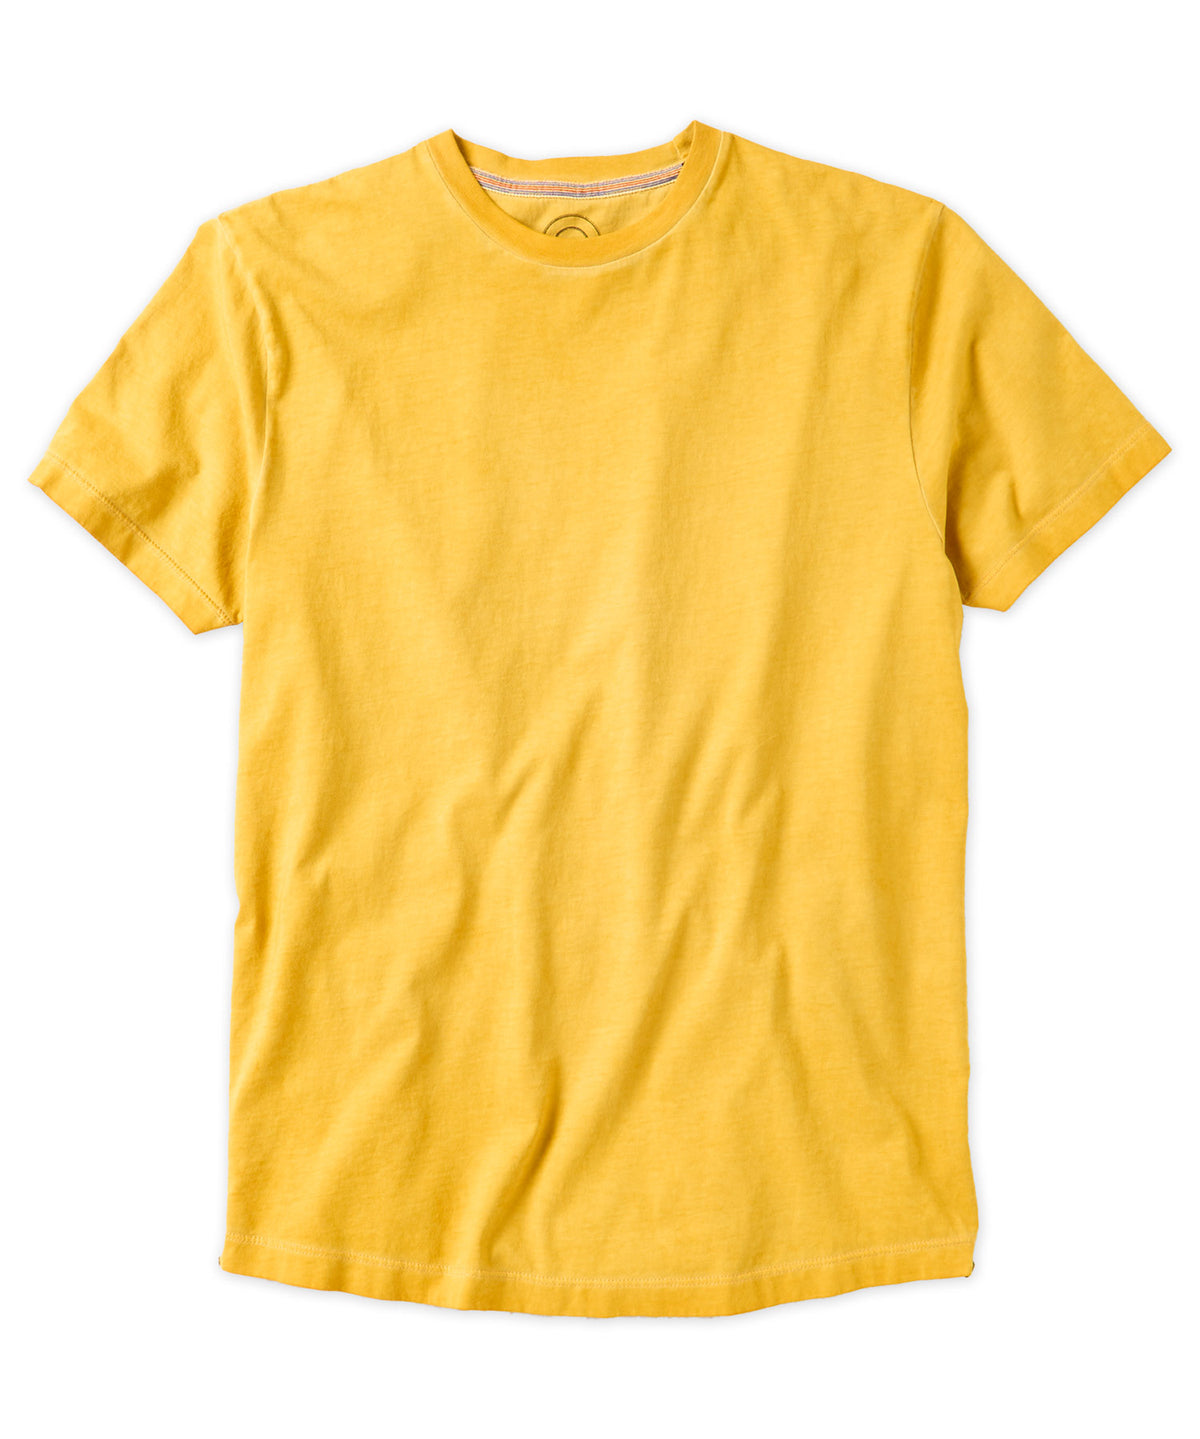 Premium Class Cotton Jersey Garment-Dyed Tee Shirt